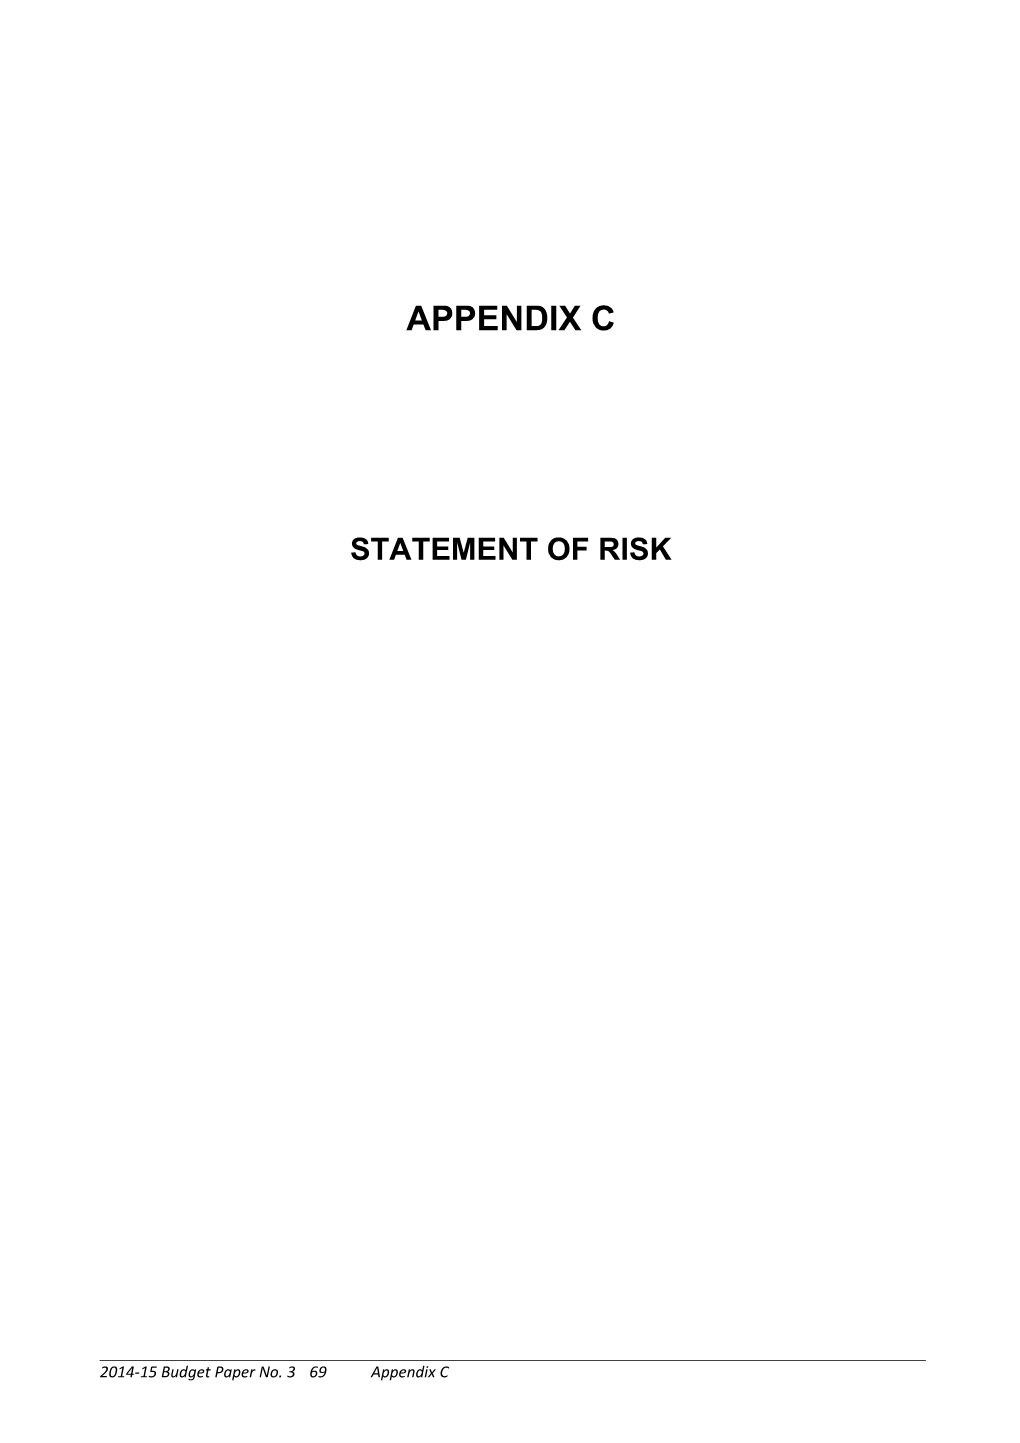 Appendix C: Statement of Risk